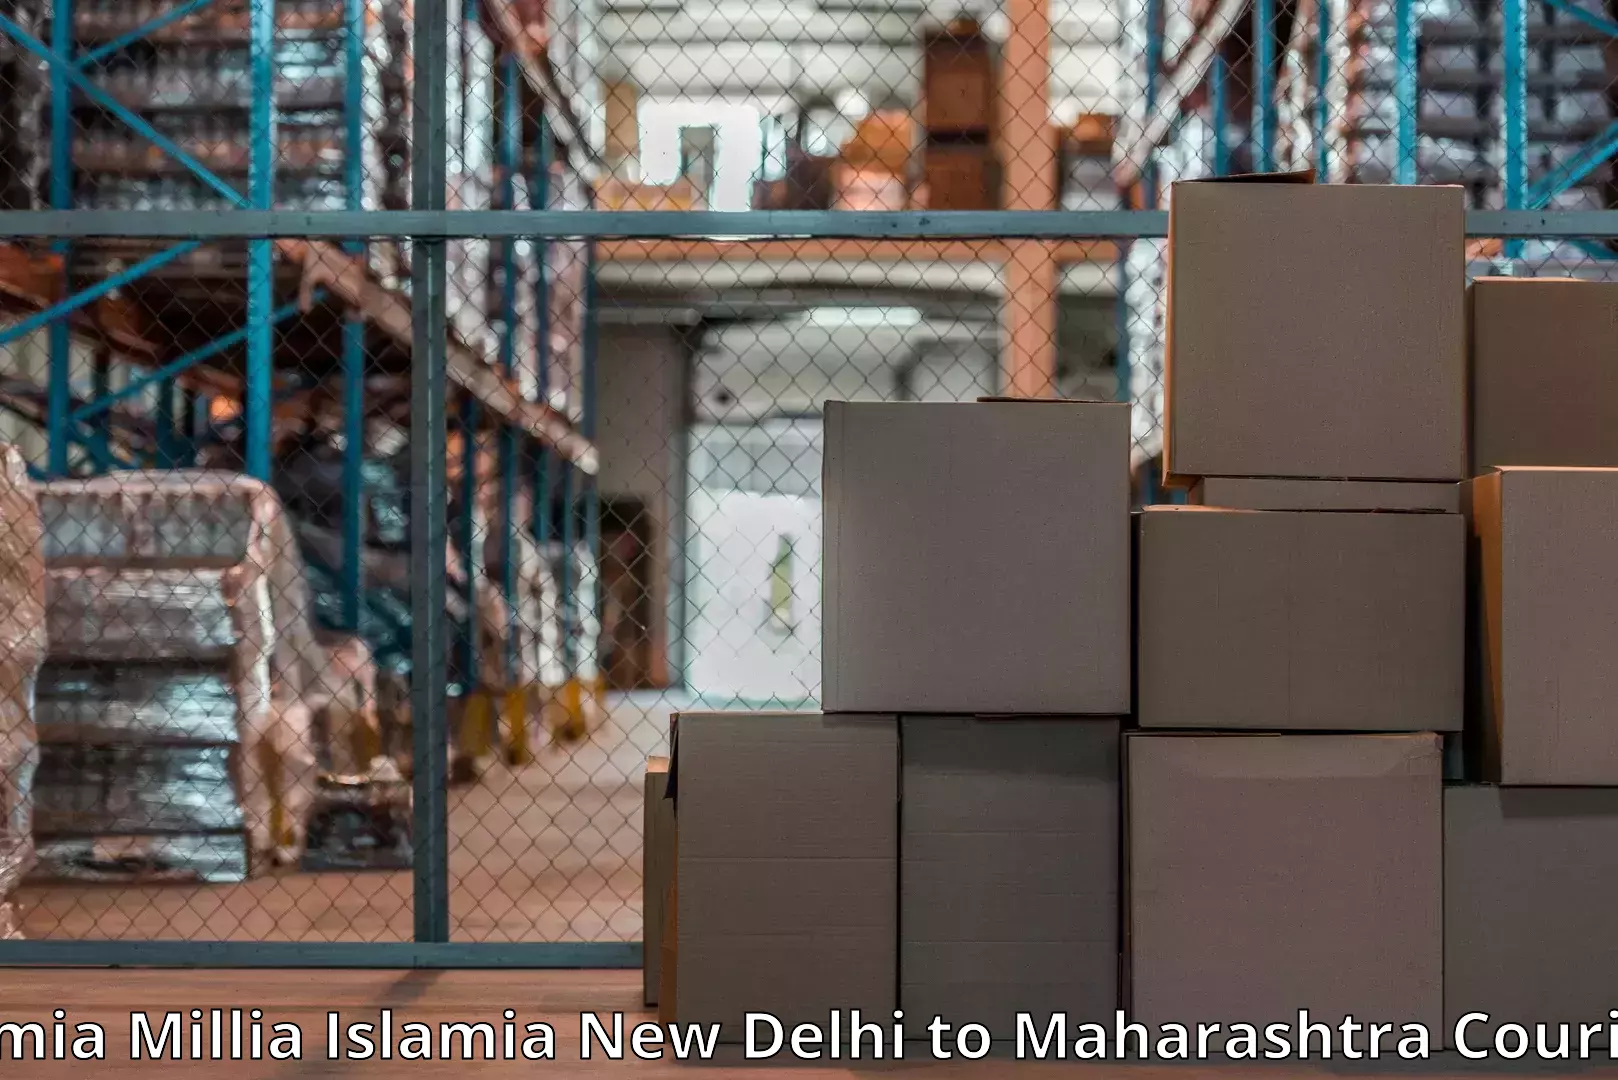 Moving and storage services Jamia Millia Islamia New Delhi to Maharashtra